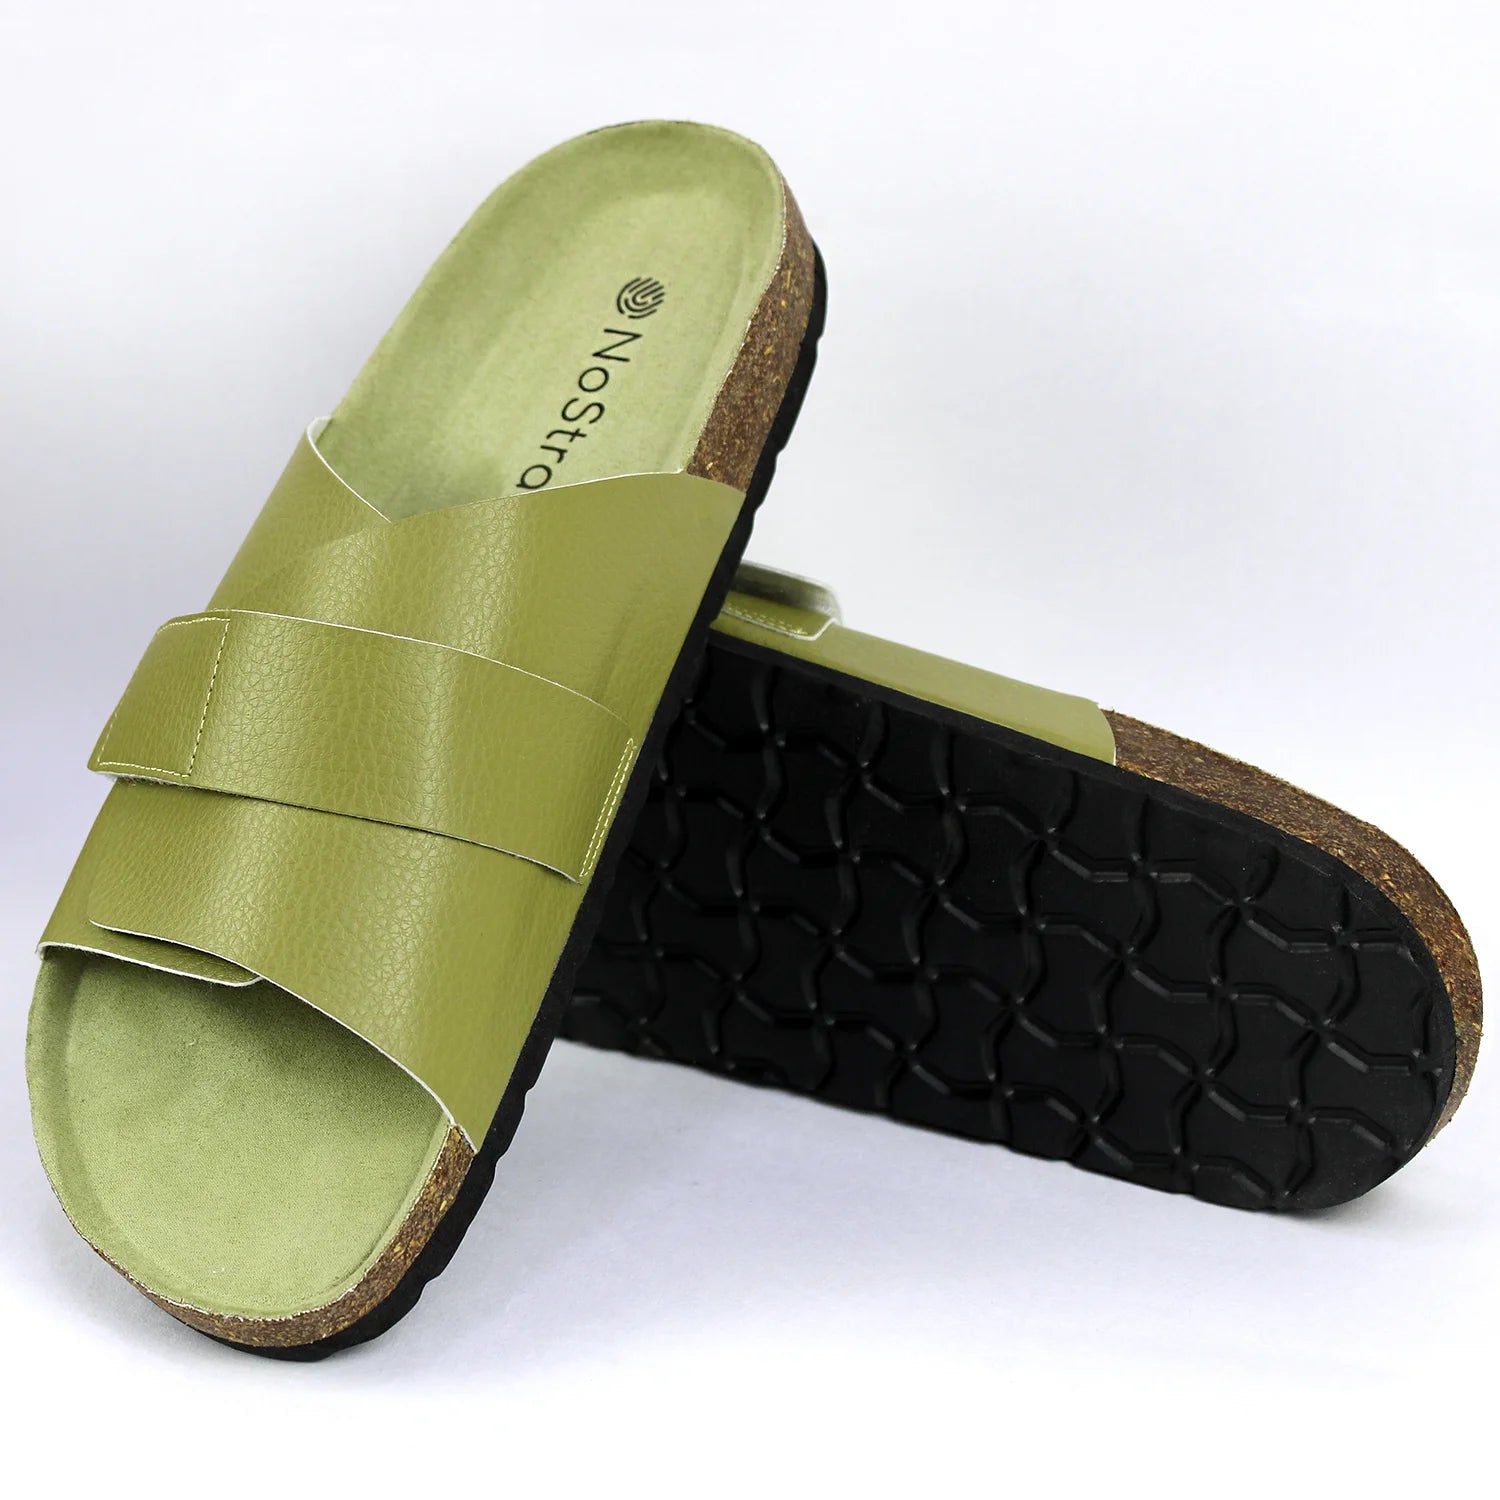 Stylish cork sandals for men in olive color